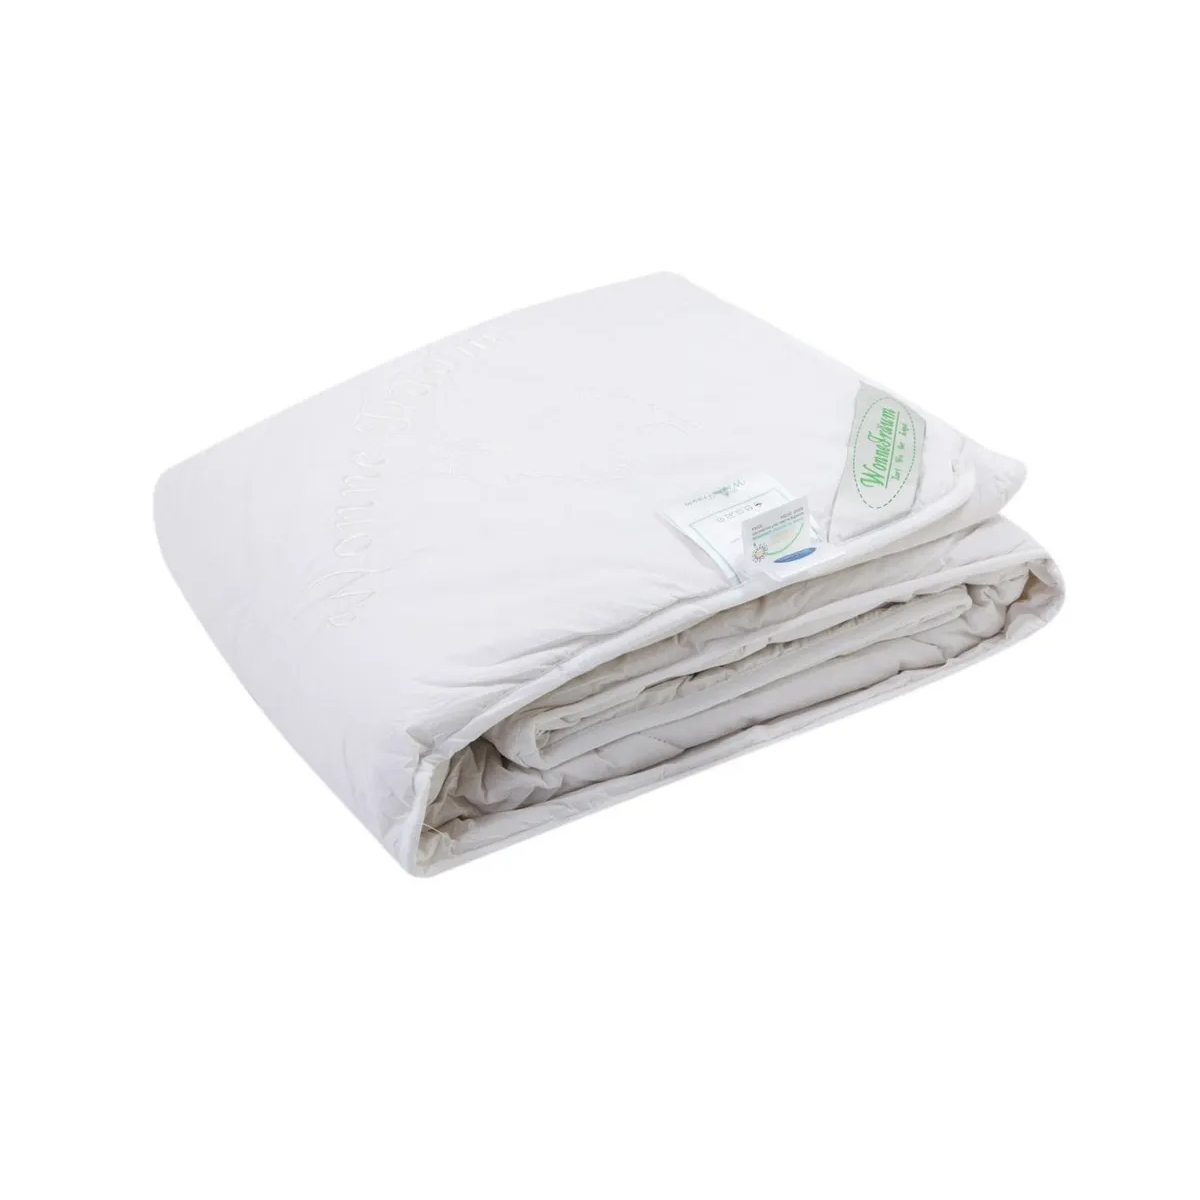 Одеяло шерстяное Wonne Traum белое 150х210 см (2709-26240) одеяло шерстяное wonne traum кремовое 200х220 см 2709 26245